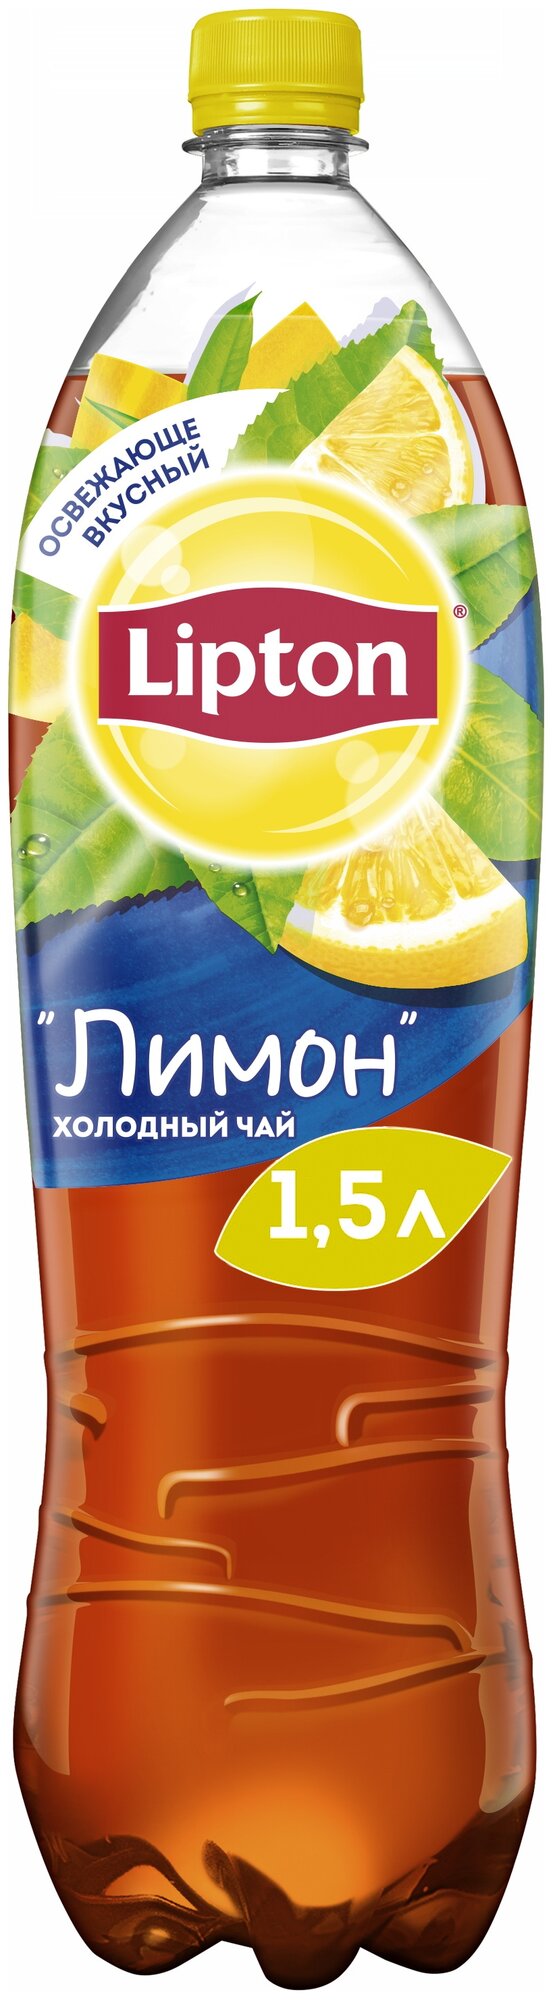 Чай Lipton Лимон 1,5 л (товар продается поштучно)